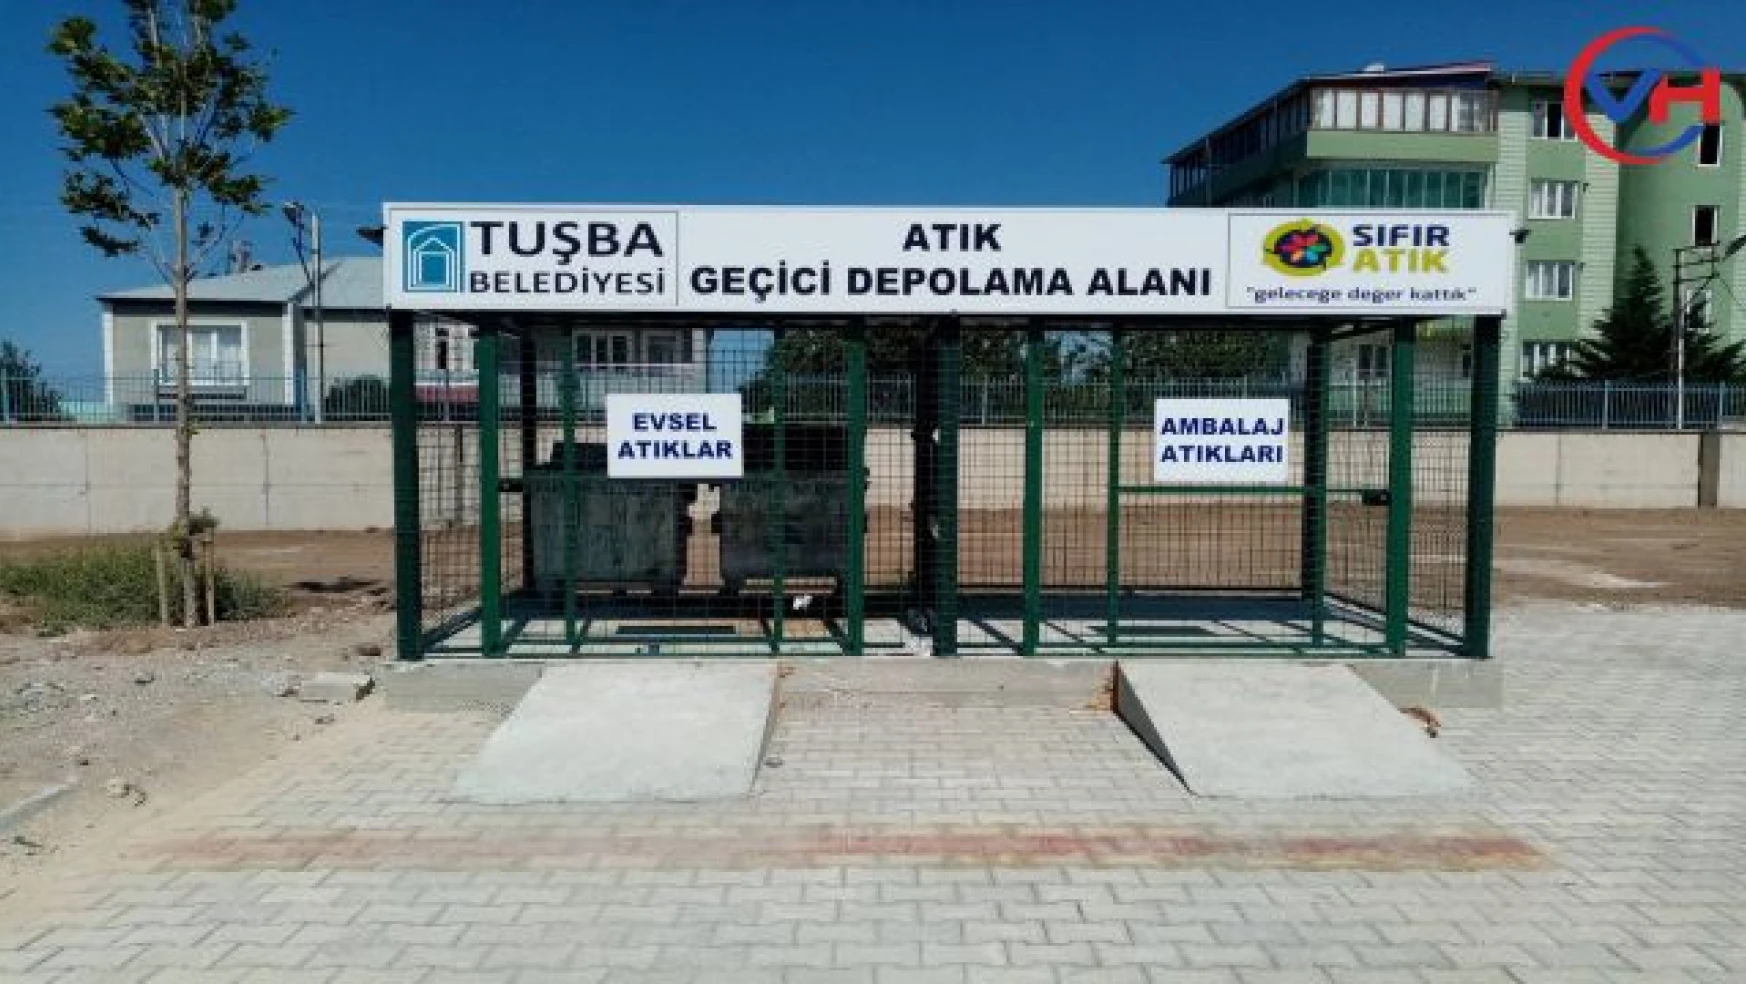 Tuşba Belediyesi Sıfır Atık Belgesi aldı